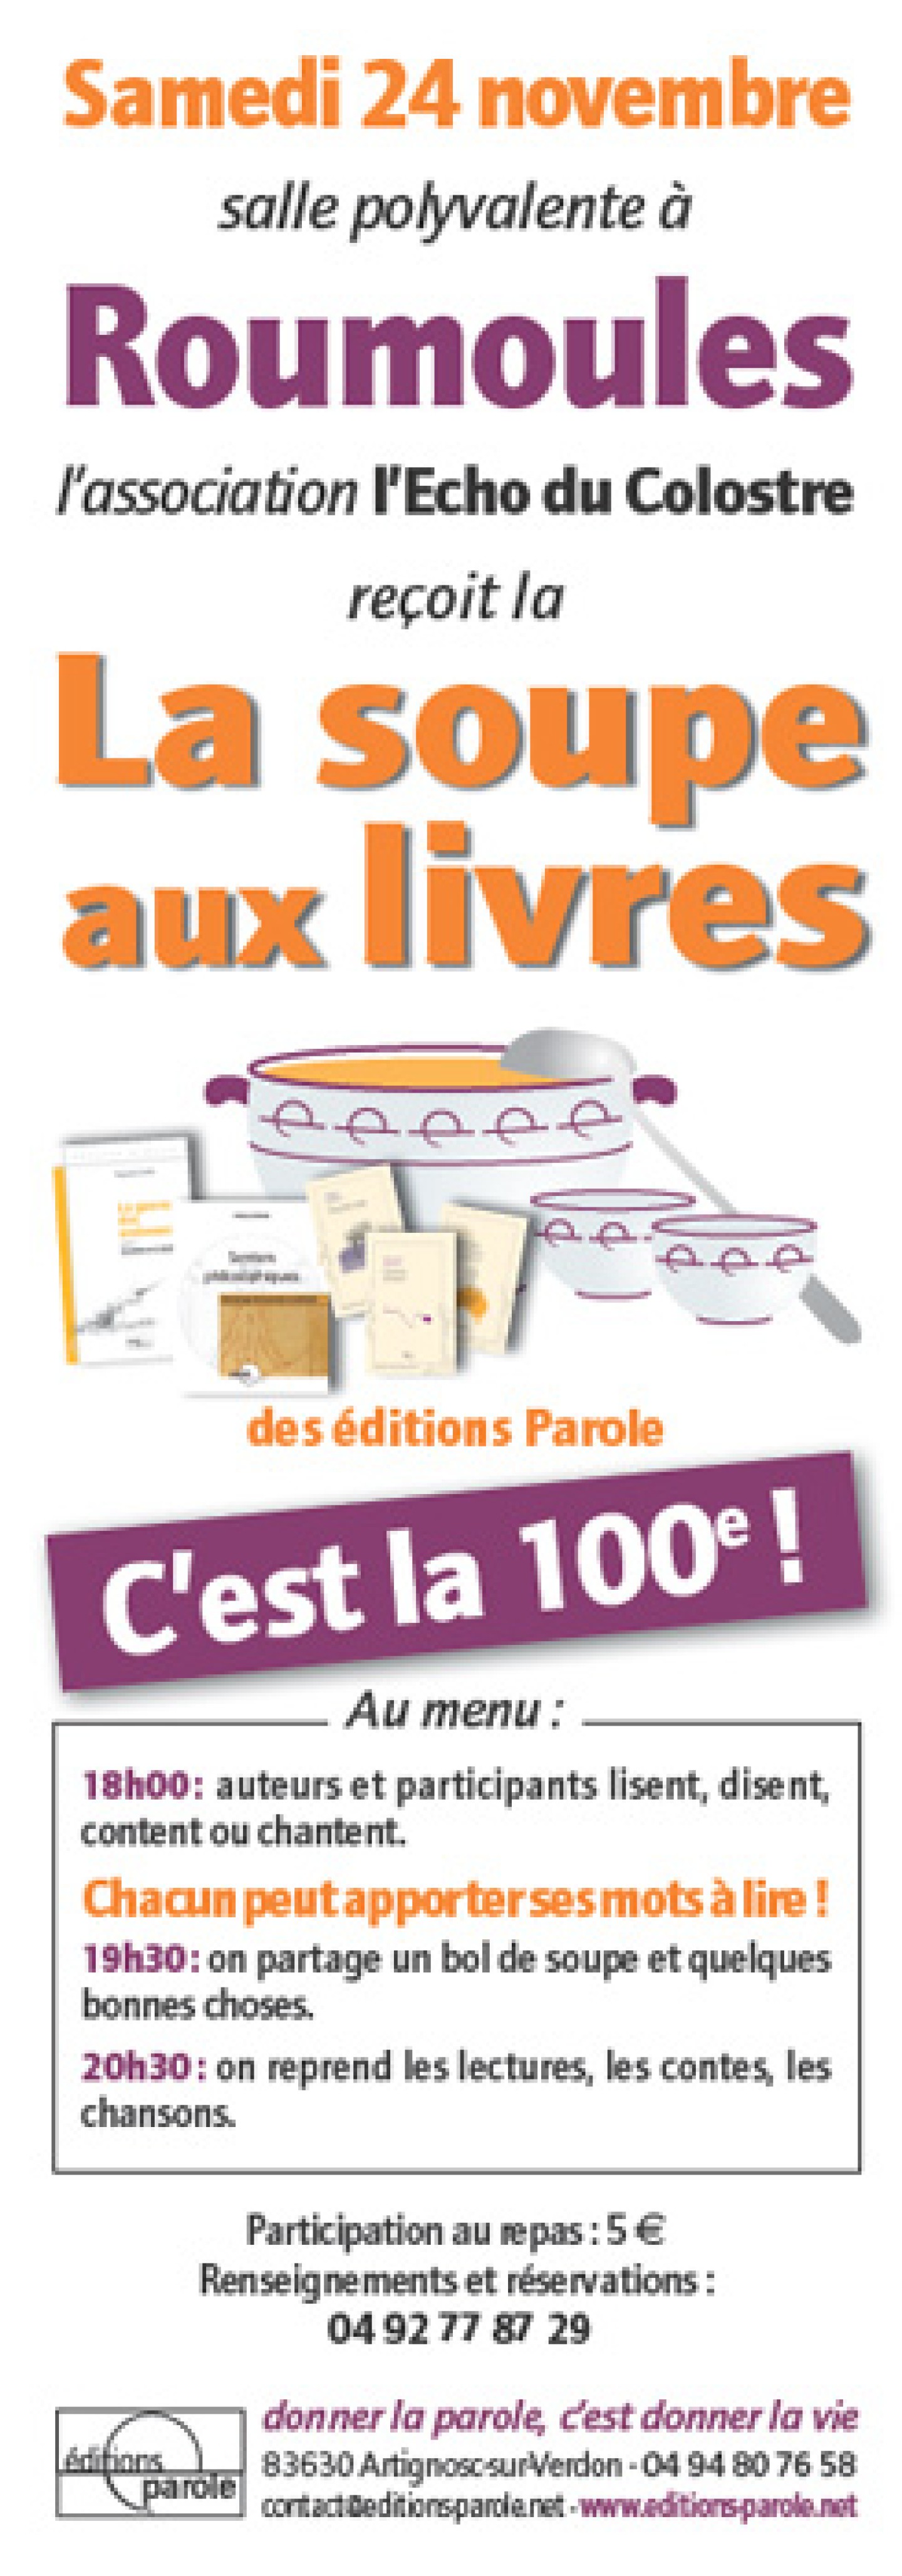 100ème édtition de la Soupe aux livres des éditions Parole à Roumoules